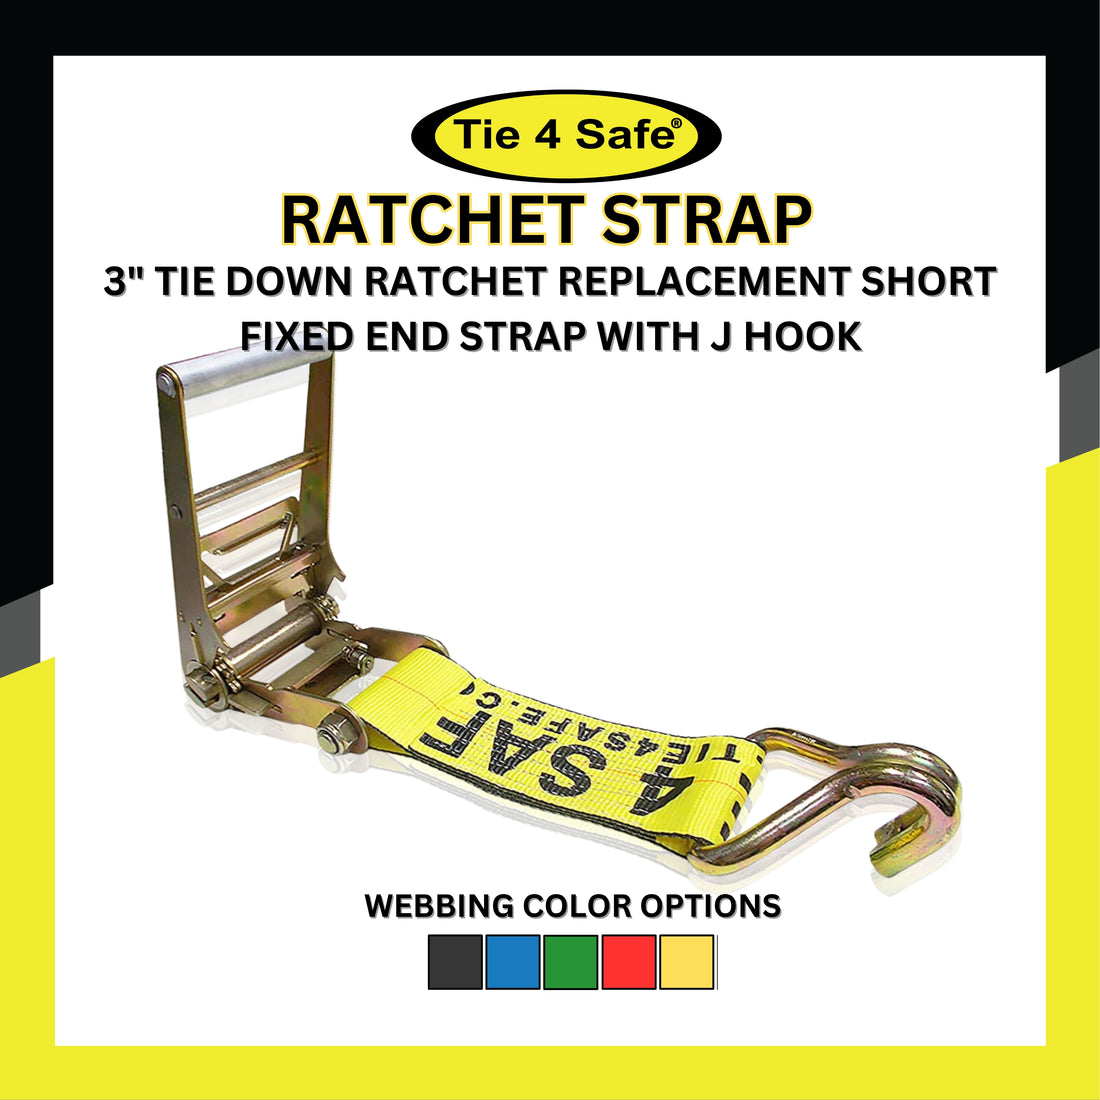 Flatbed Ratchet Straps – Tie 4 Safe